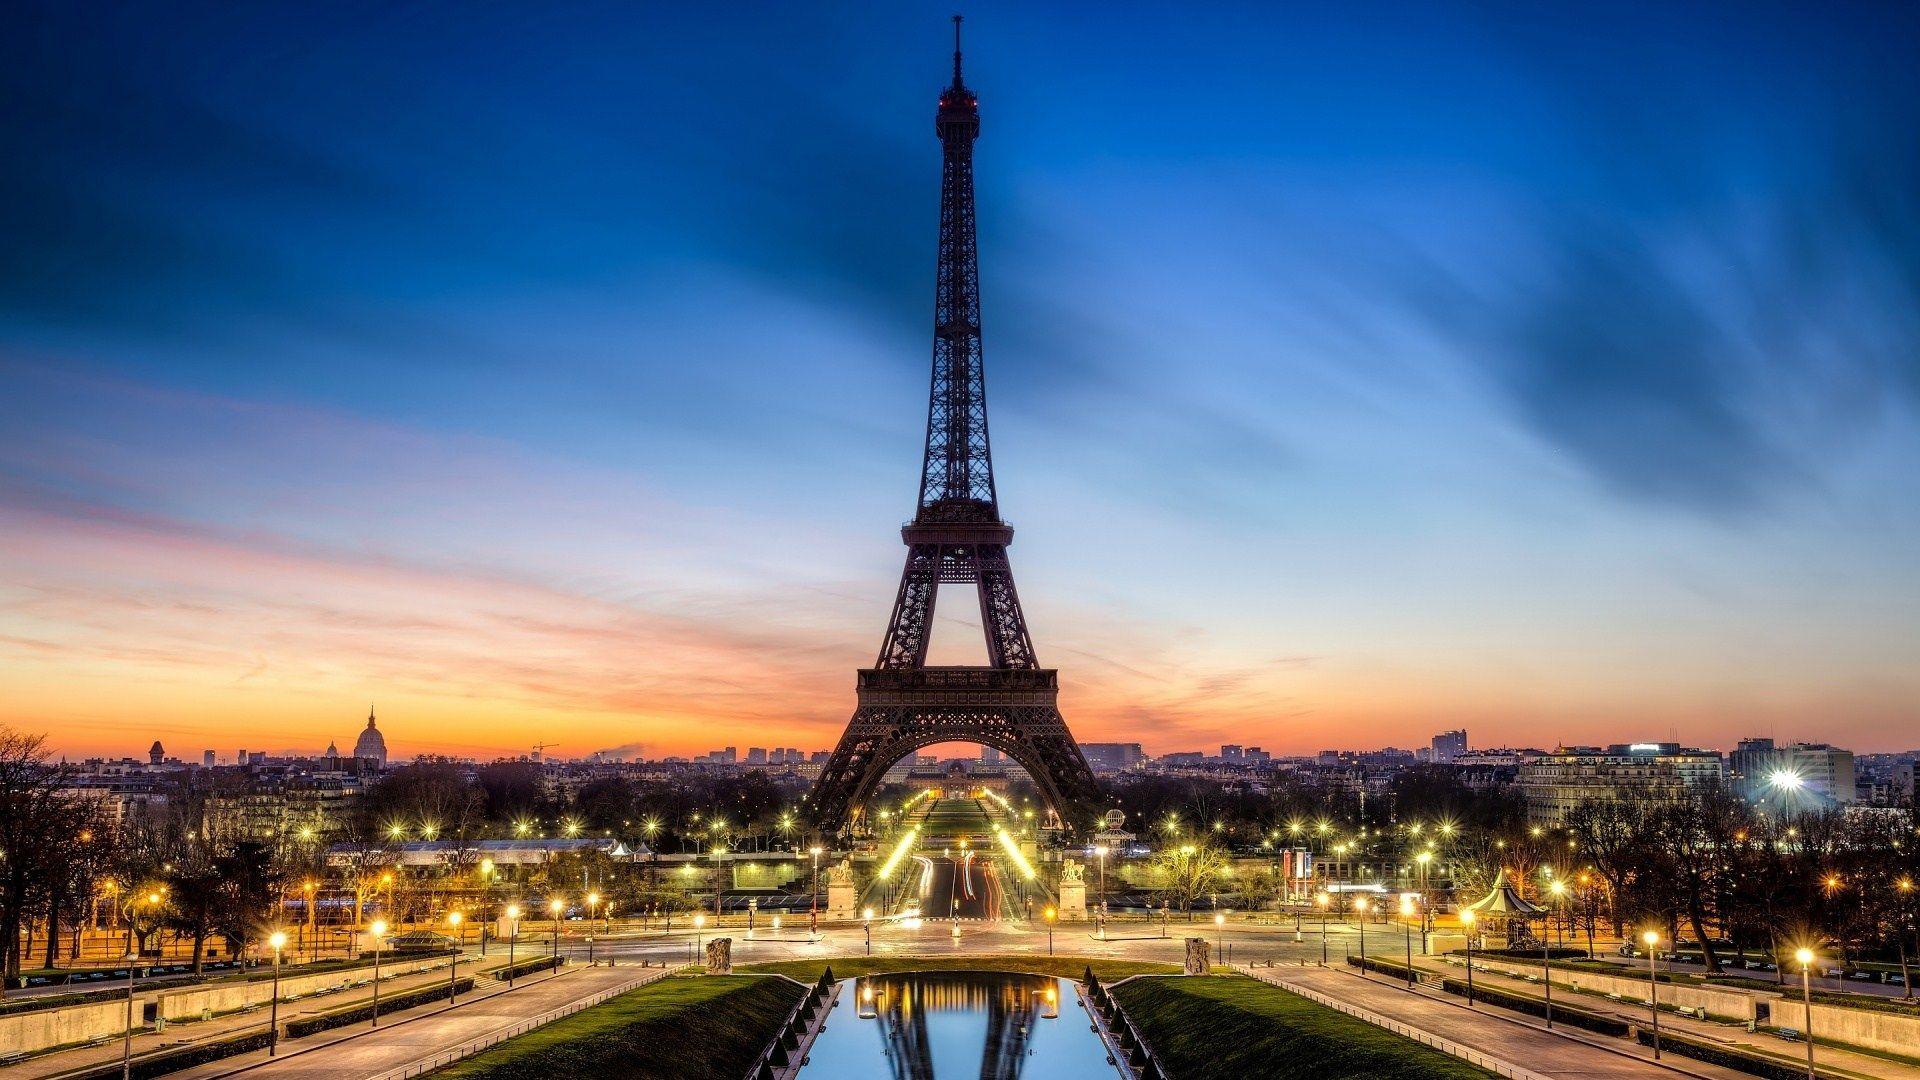 Eiffel tower desktop wallpapers